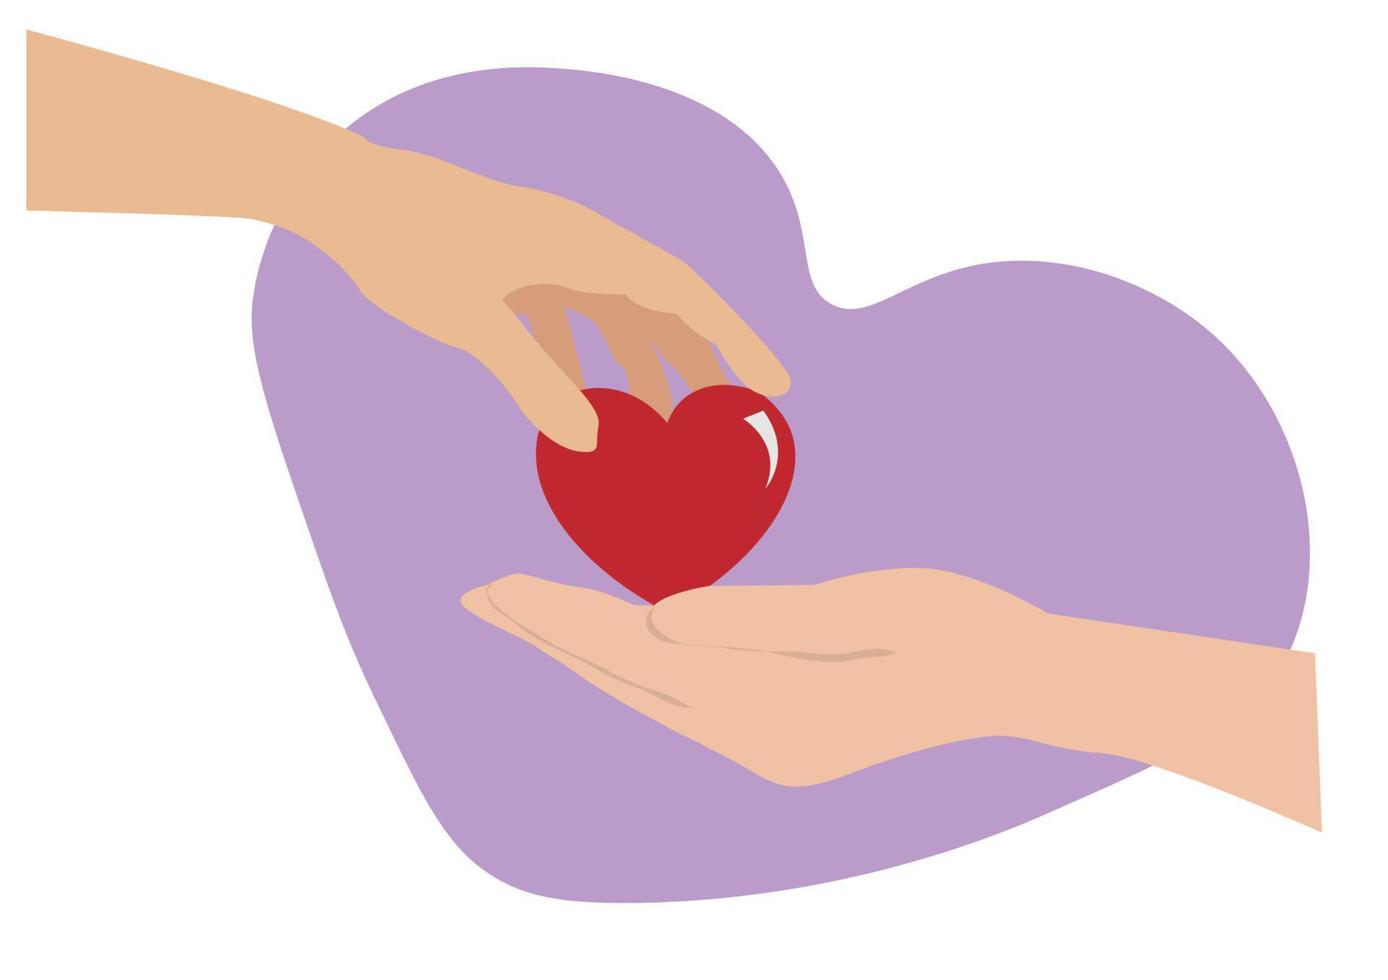 concept van liefde, zorg, delen, schenking van de mensheid door harten aan elkaar te geven. platte cartoon afbeelding. vector